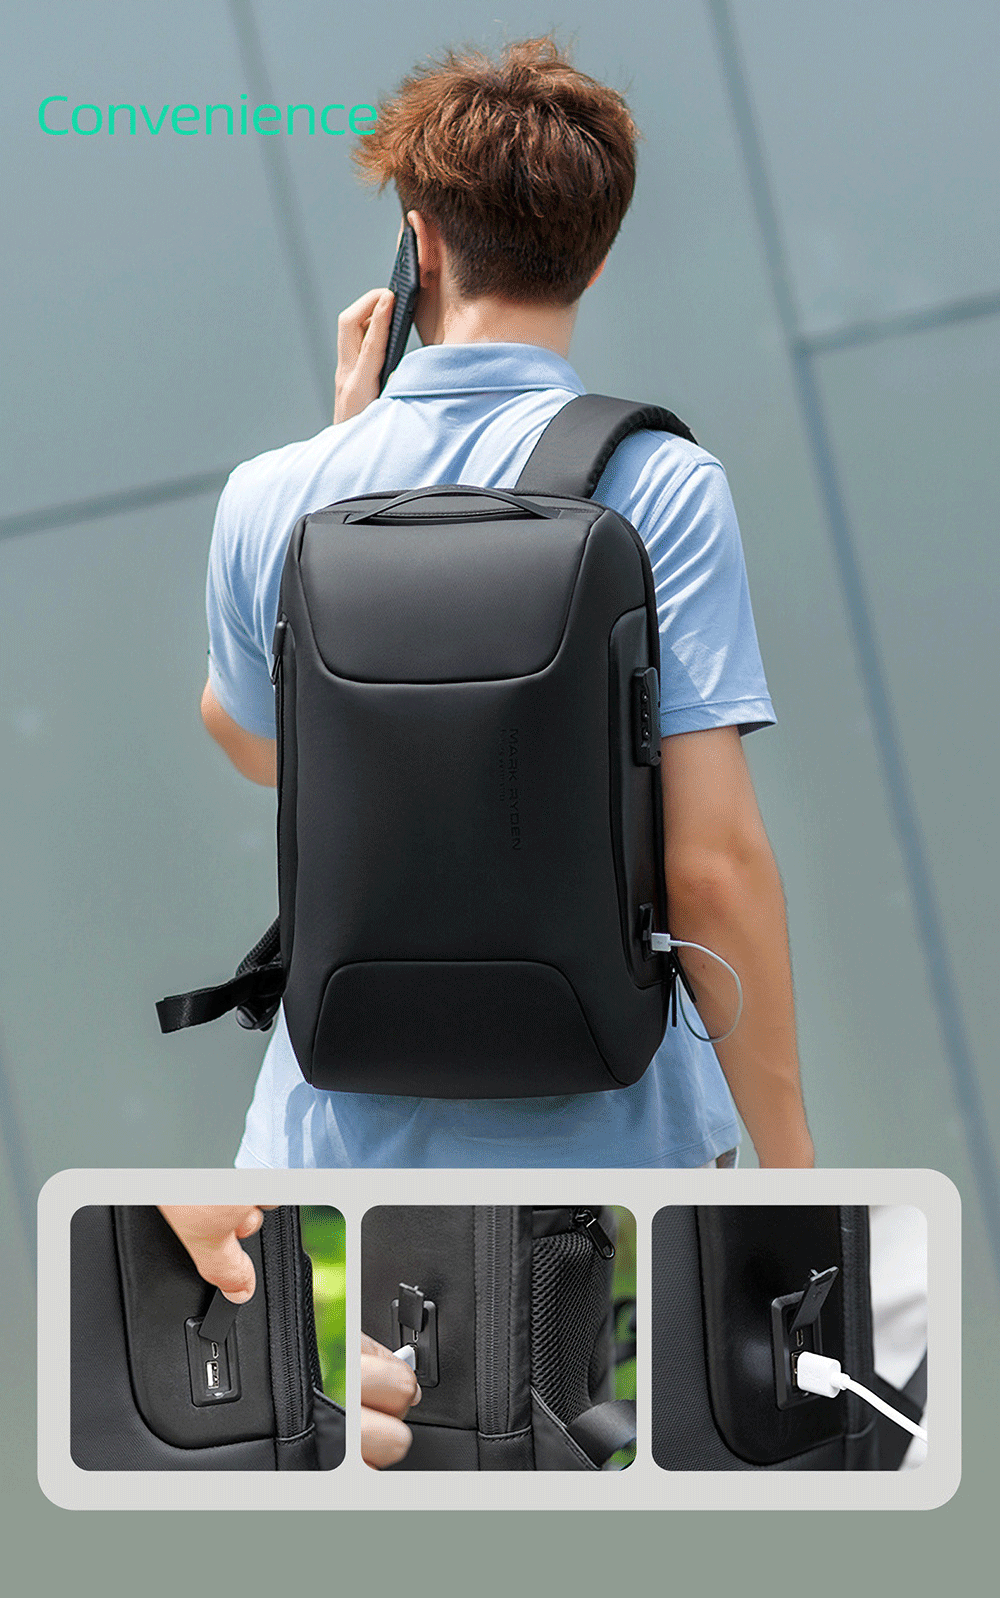 Mark-Ryden-MR9116-Anti-theft-Backpack-Laptop-Bag-Shoulder-Bag-USB-Charging-Men-Business-Travel-Stora-1732614